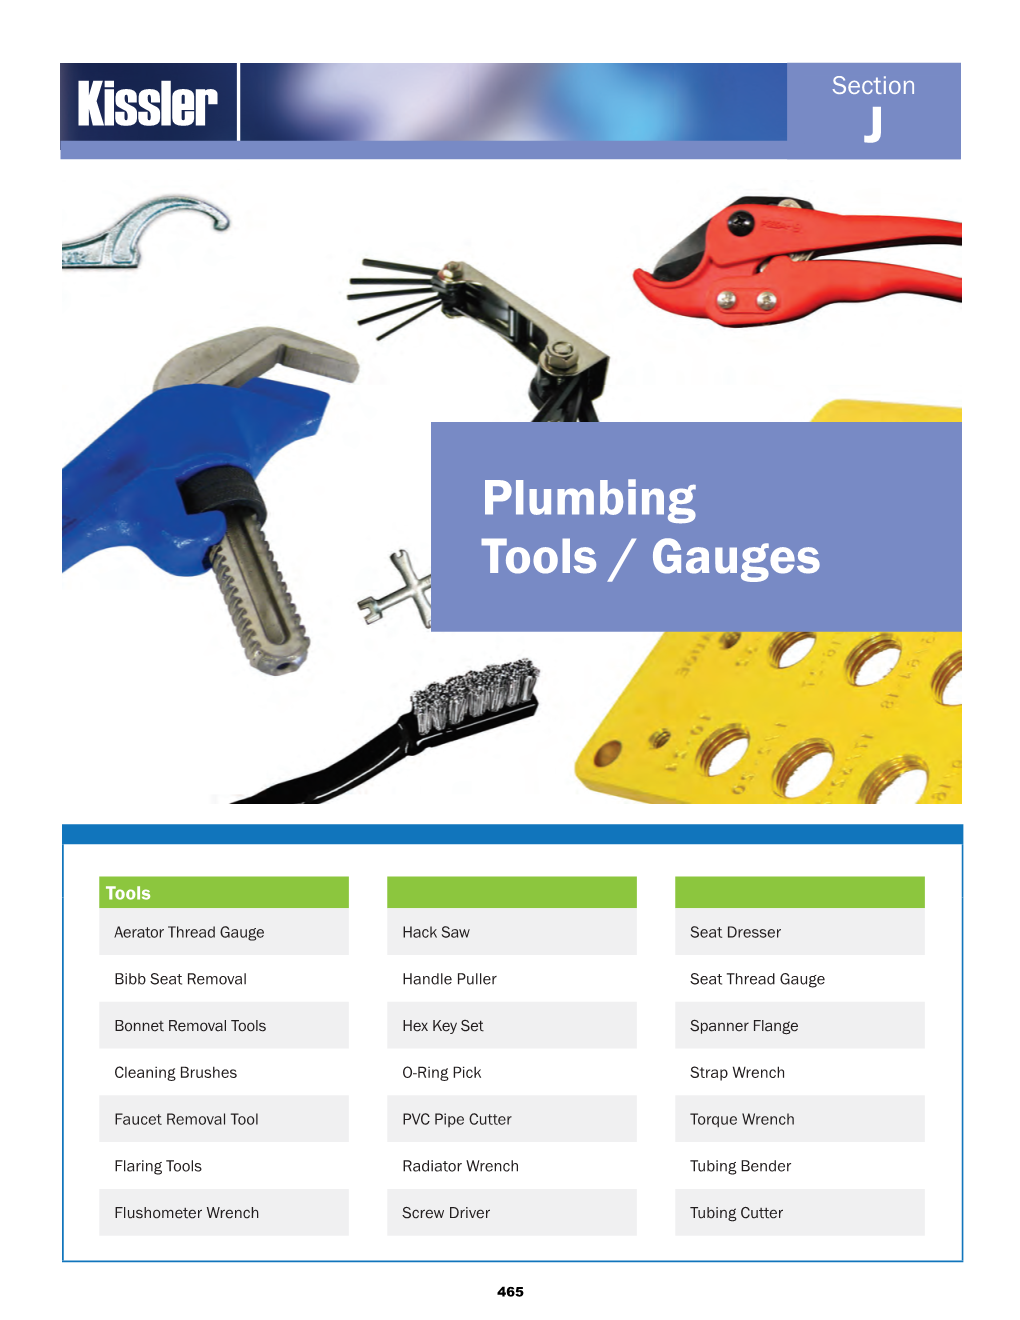 Plumbing Tools / Gauges